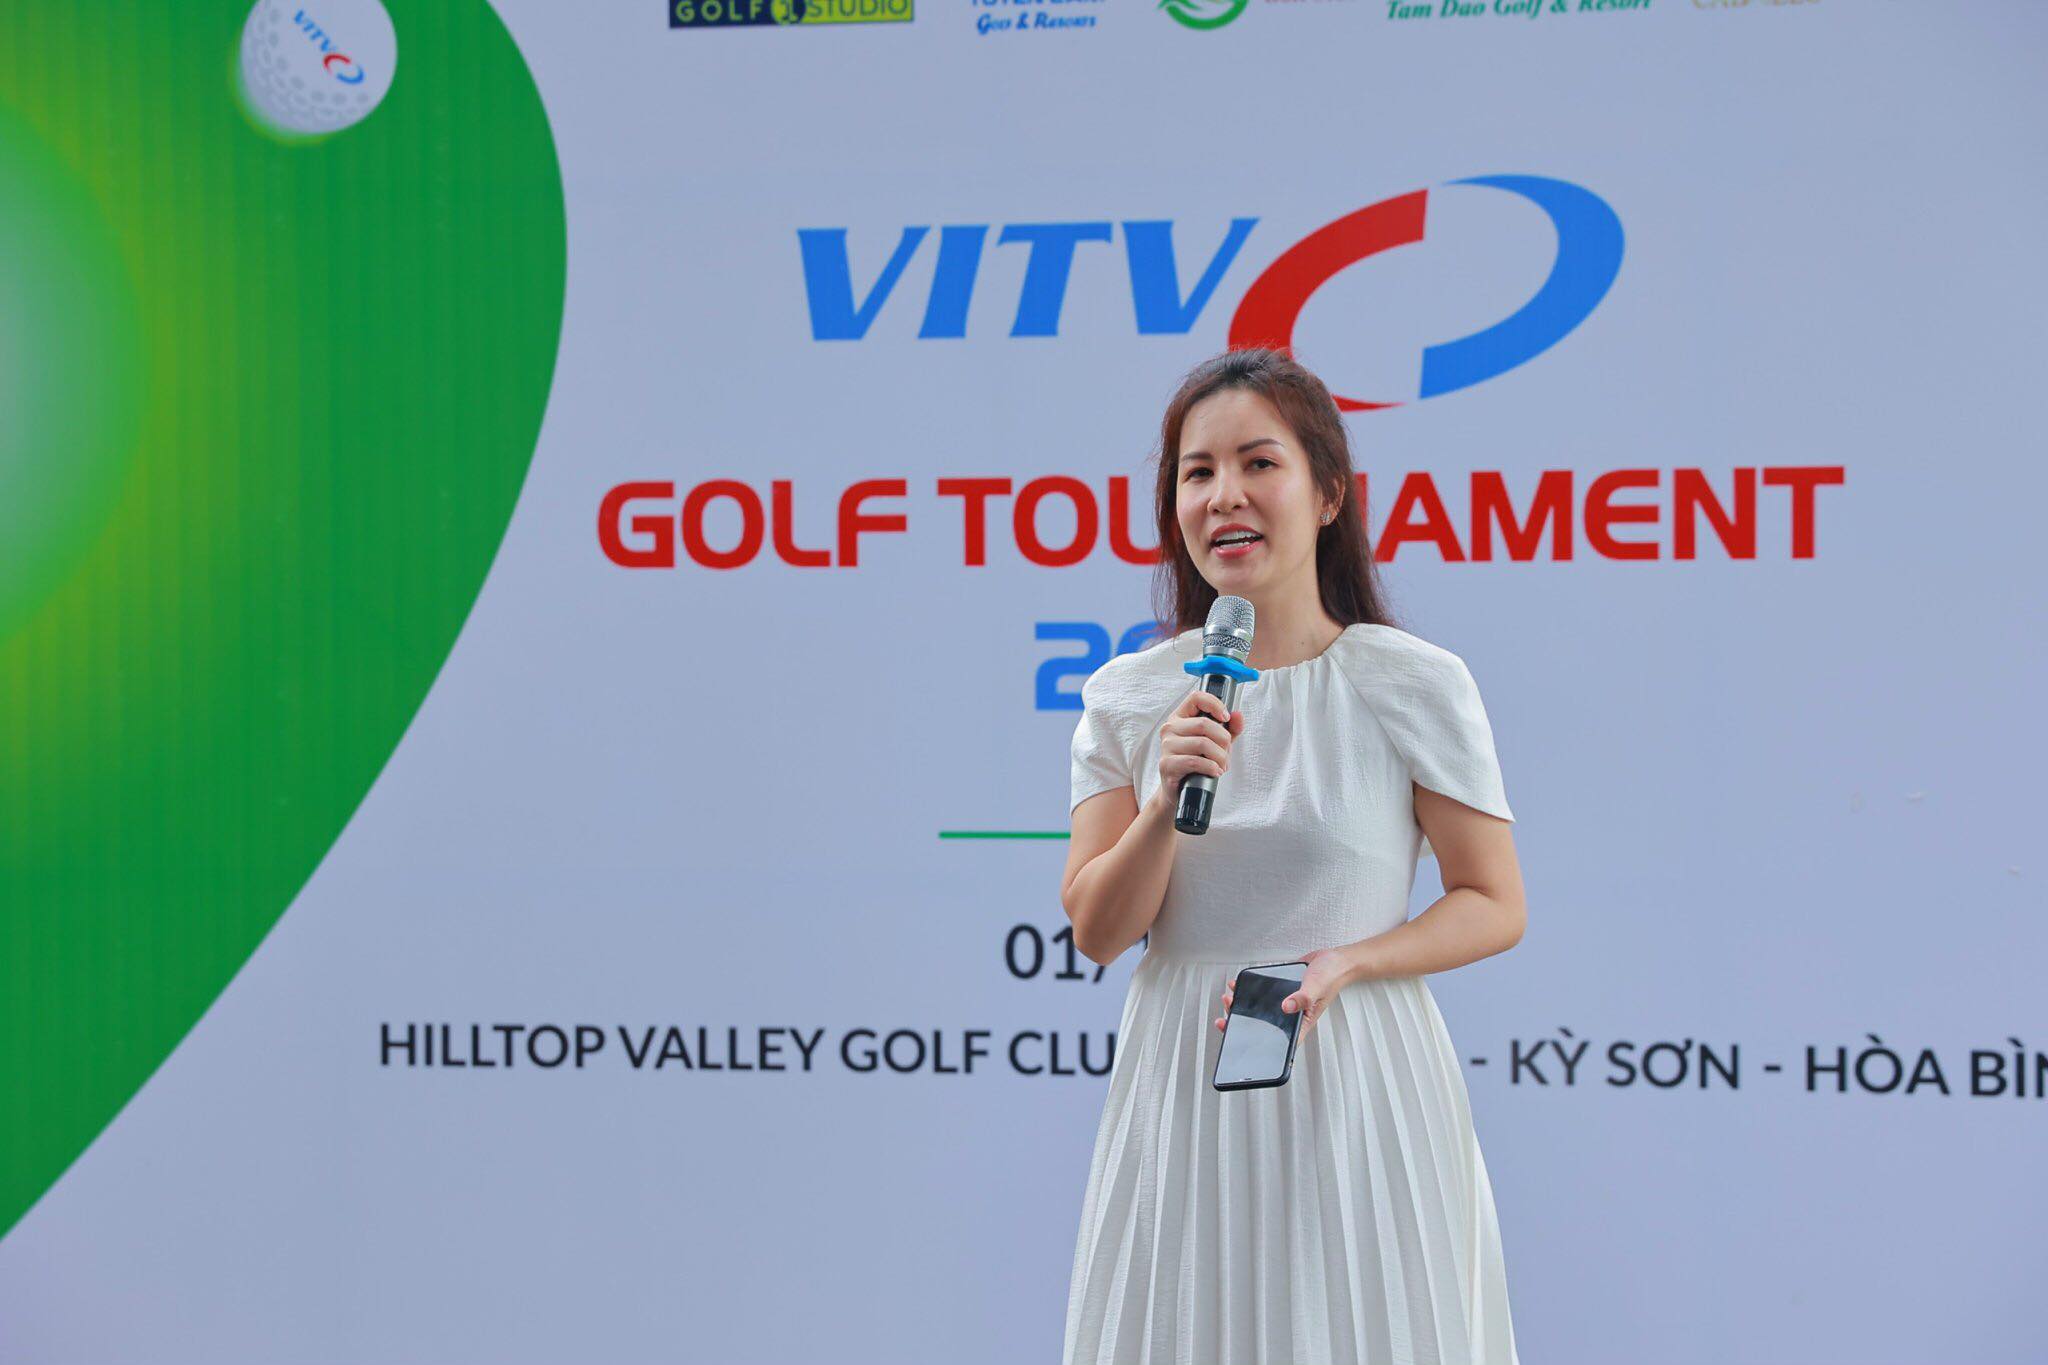 Khởi tranh giải VITV Golf Tournament lần thứ 2 năm 2022